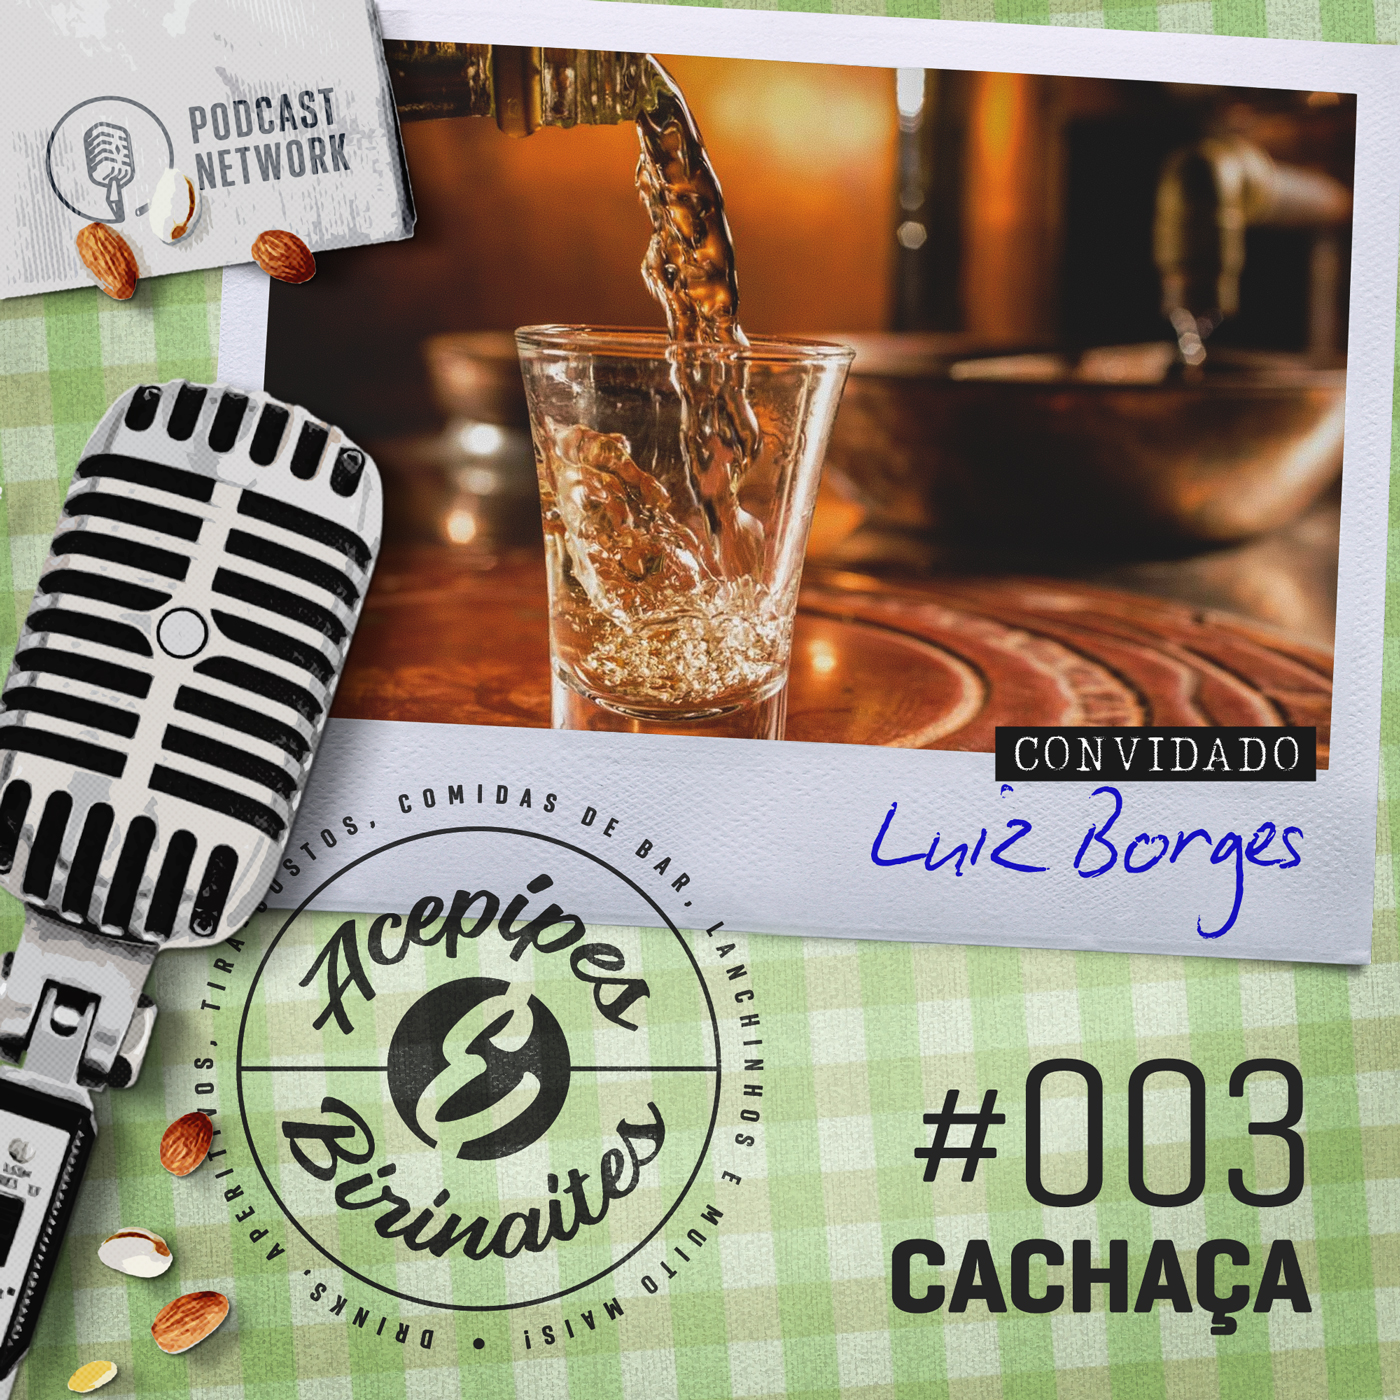 Acepipes e Birinaites #003 - Cachaça, com Luiz Borges